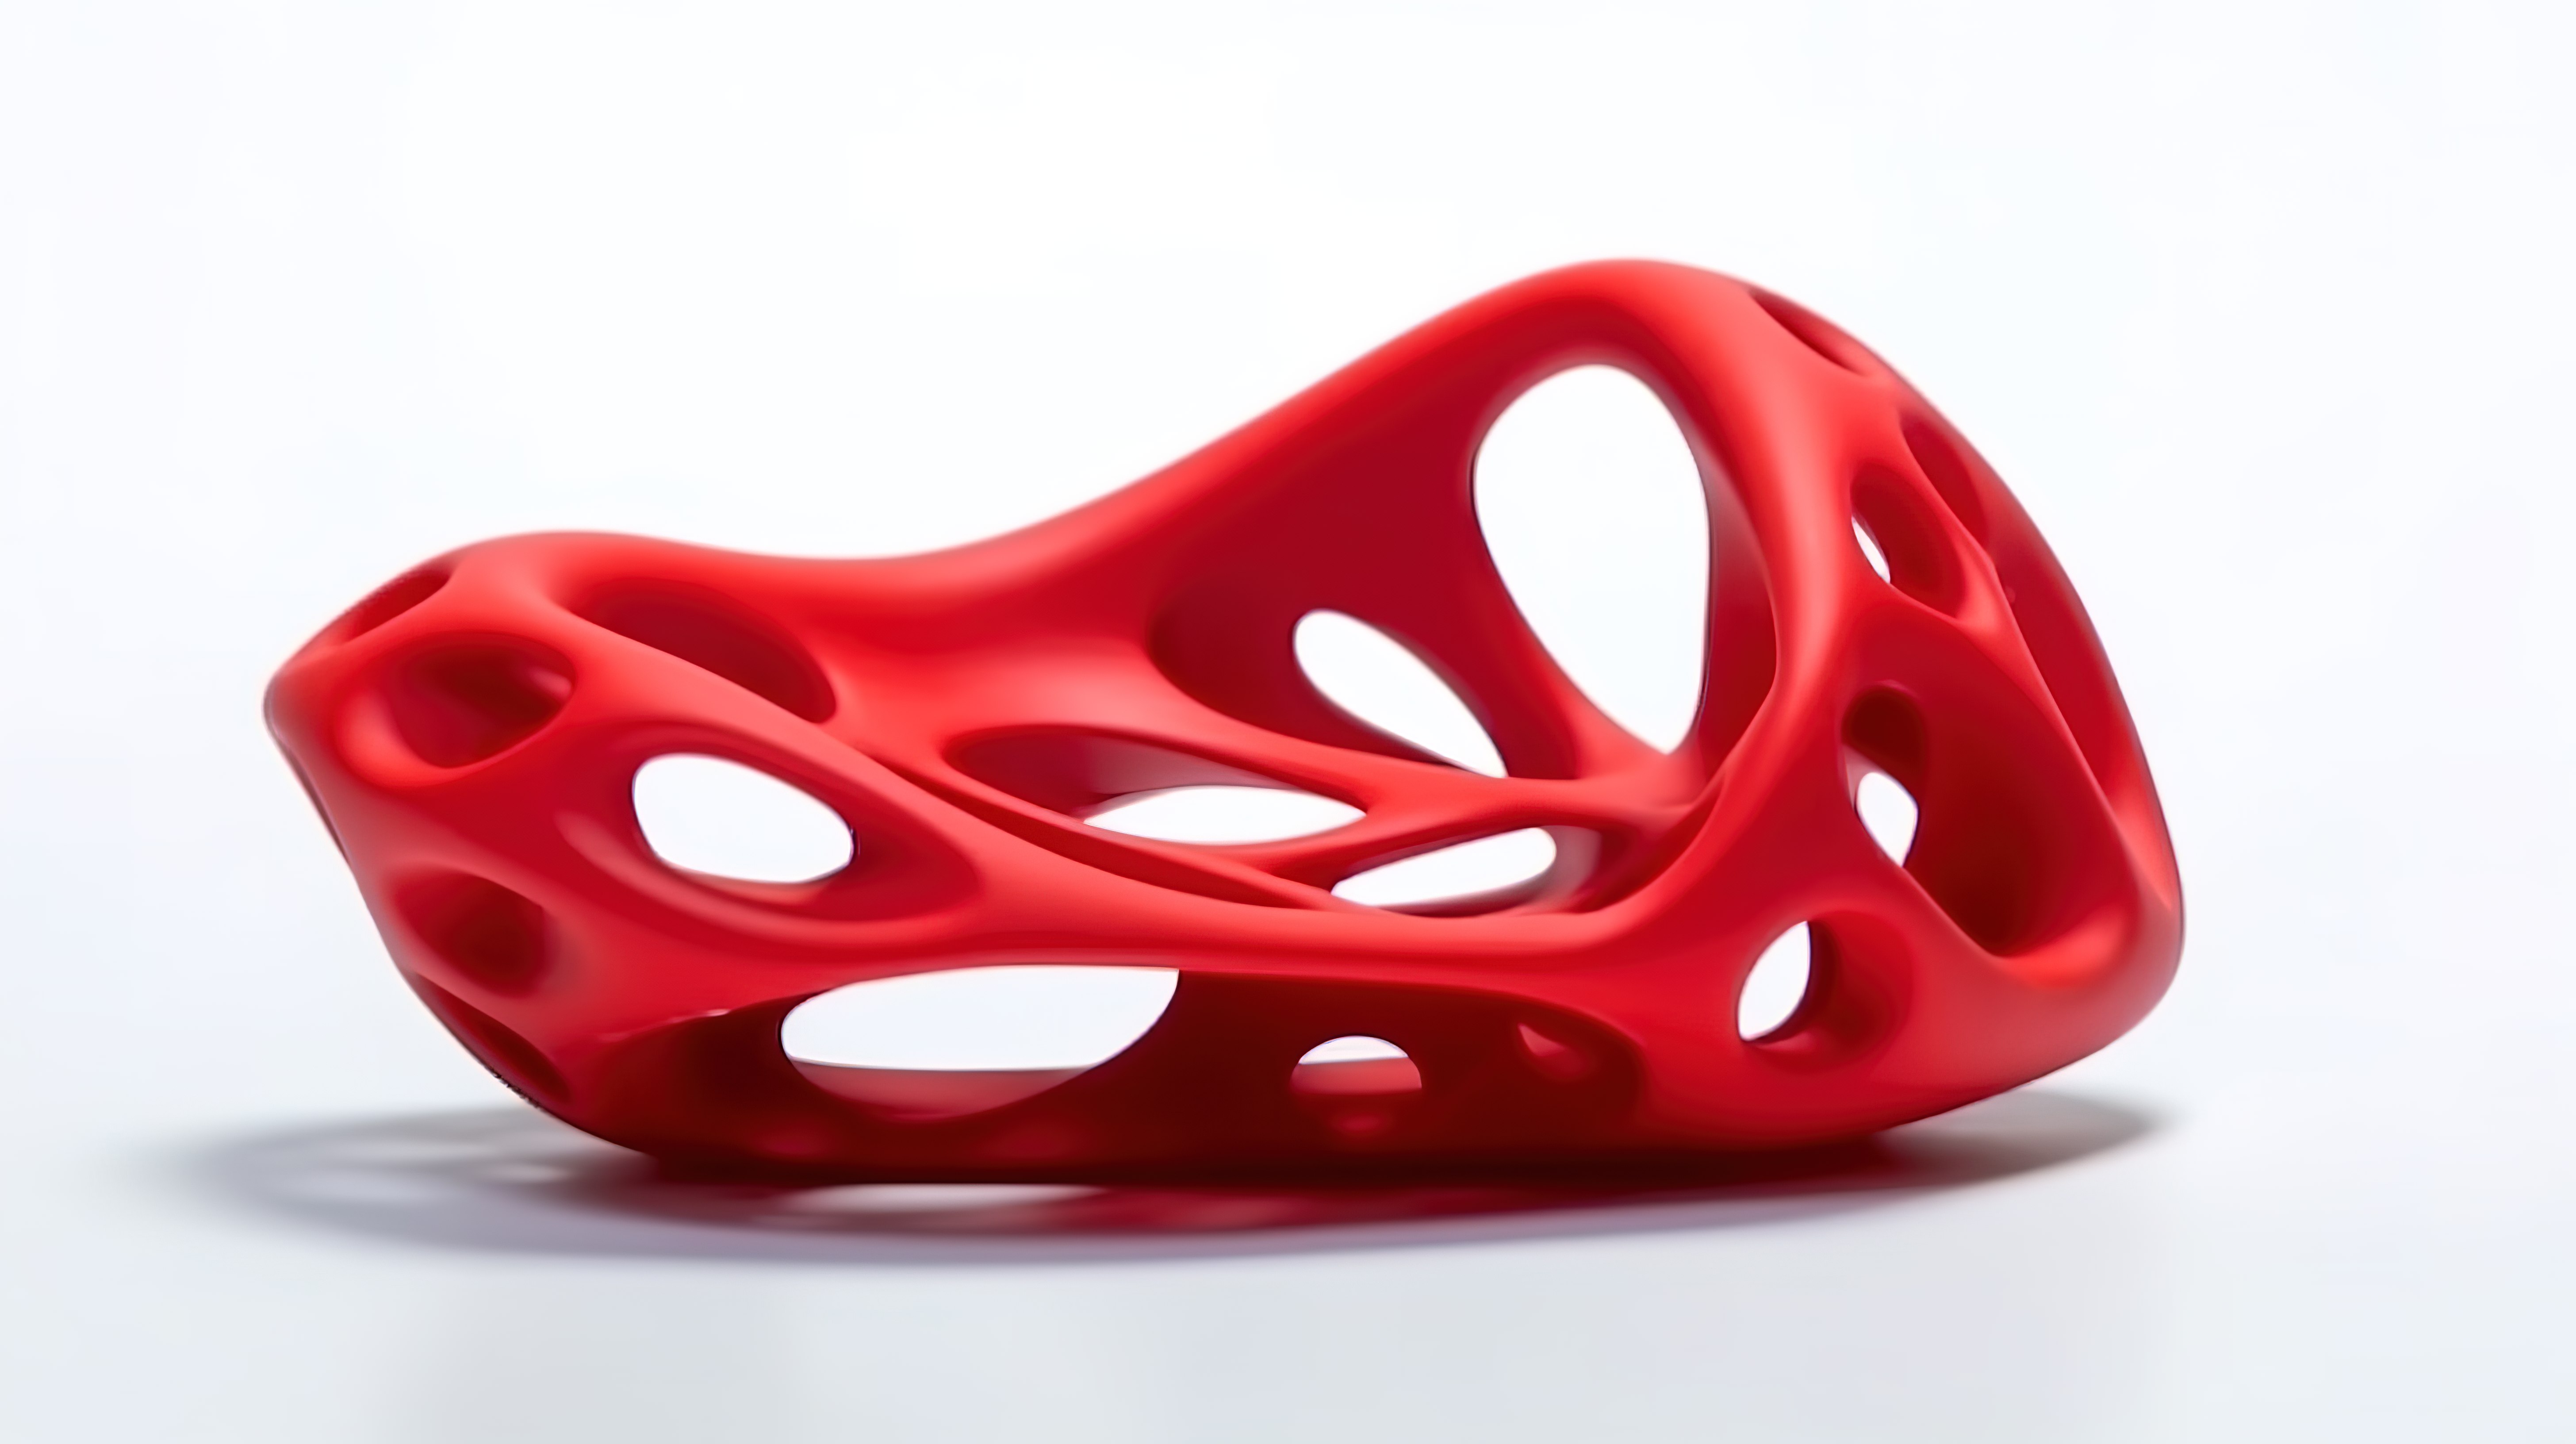 3D 打印的抽象红色物体单独站立在白色背景下图片